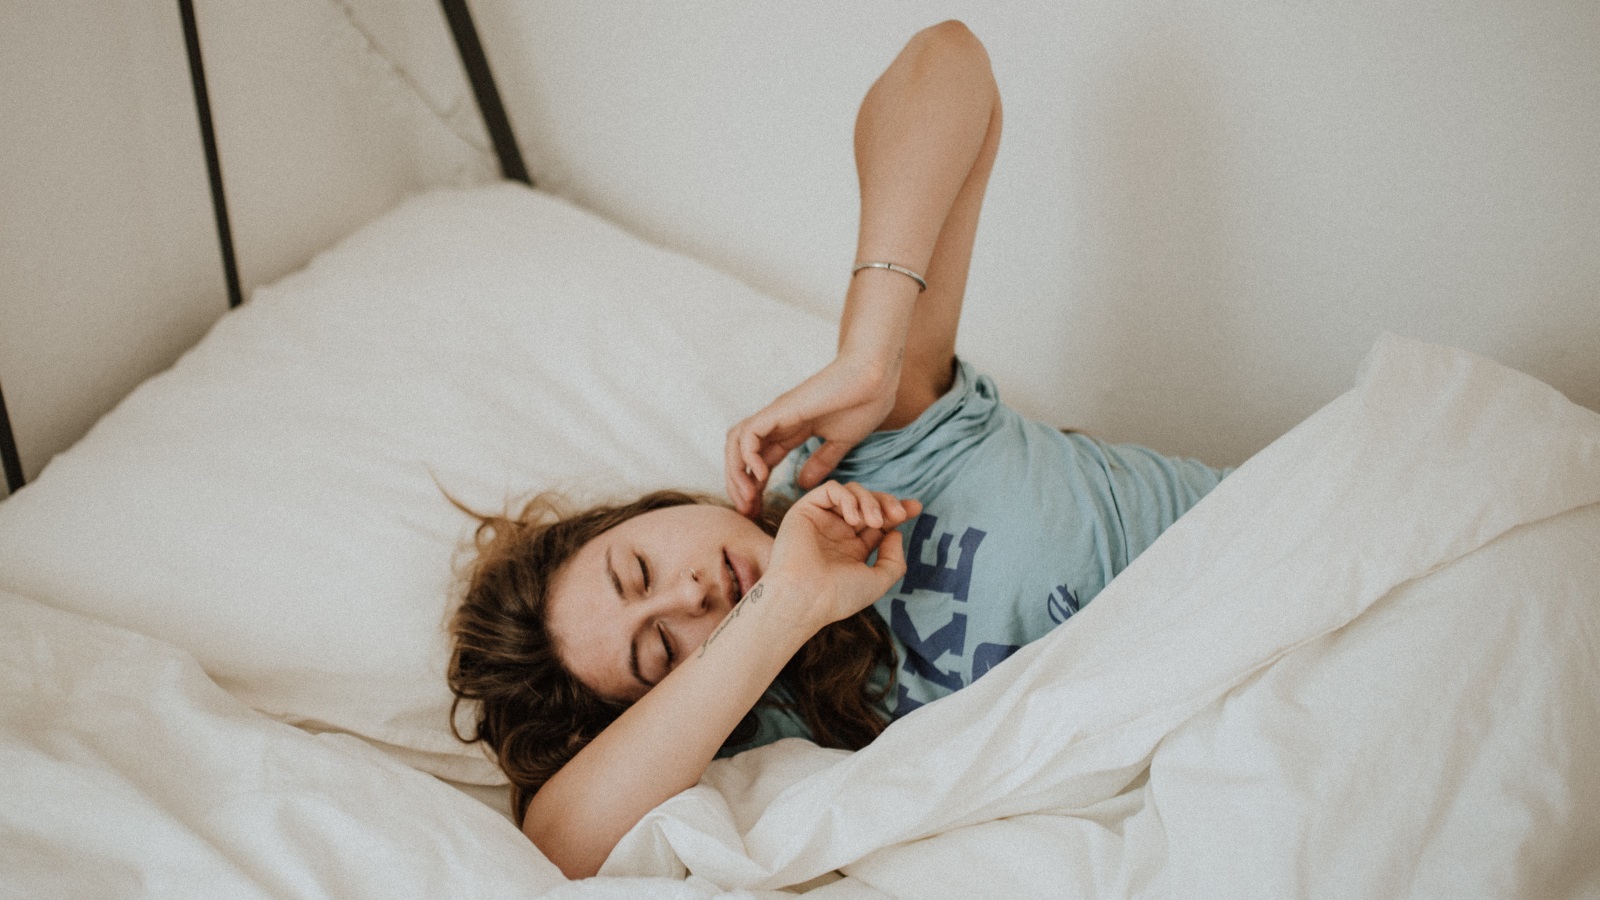 من العلامات المبكرة للإنذار بالإصابة بمرض ألمزهايمر، هو الأرق واضطرابات النوم، التي قد تسبق الإصابة بعدة سنوات